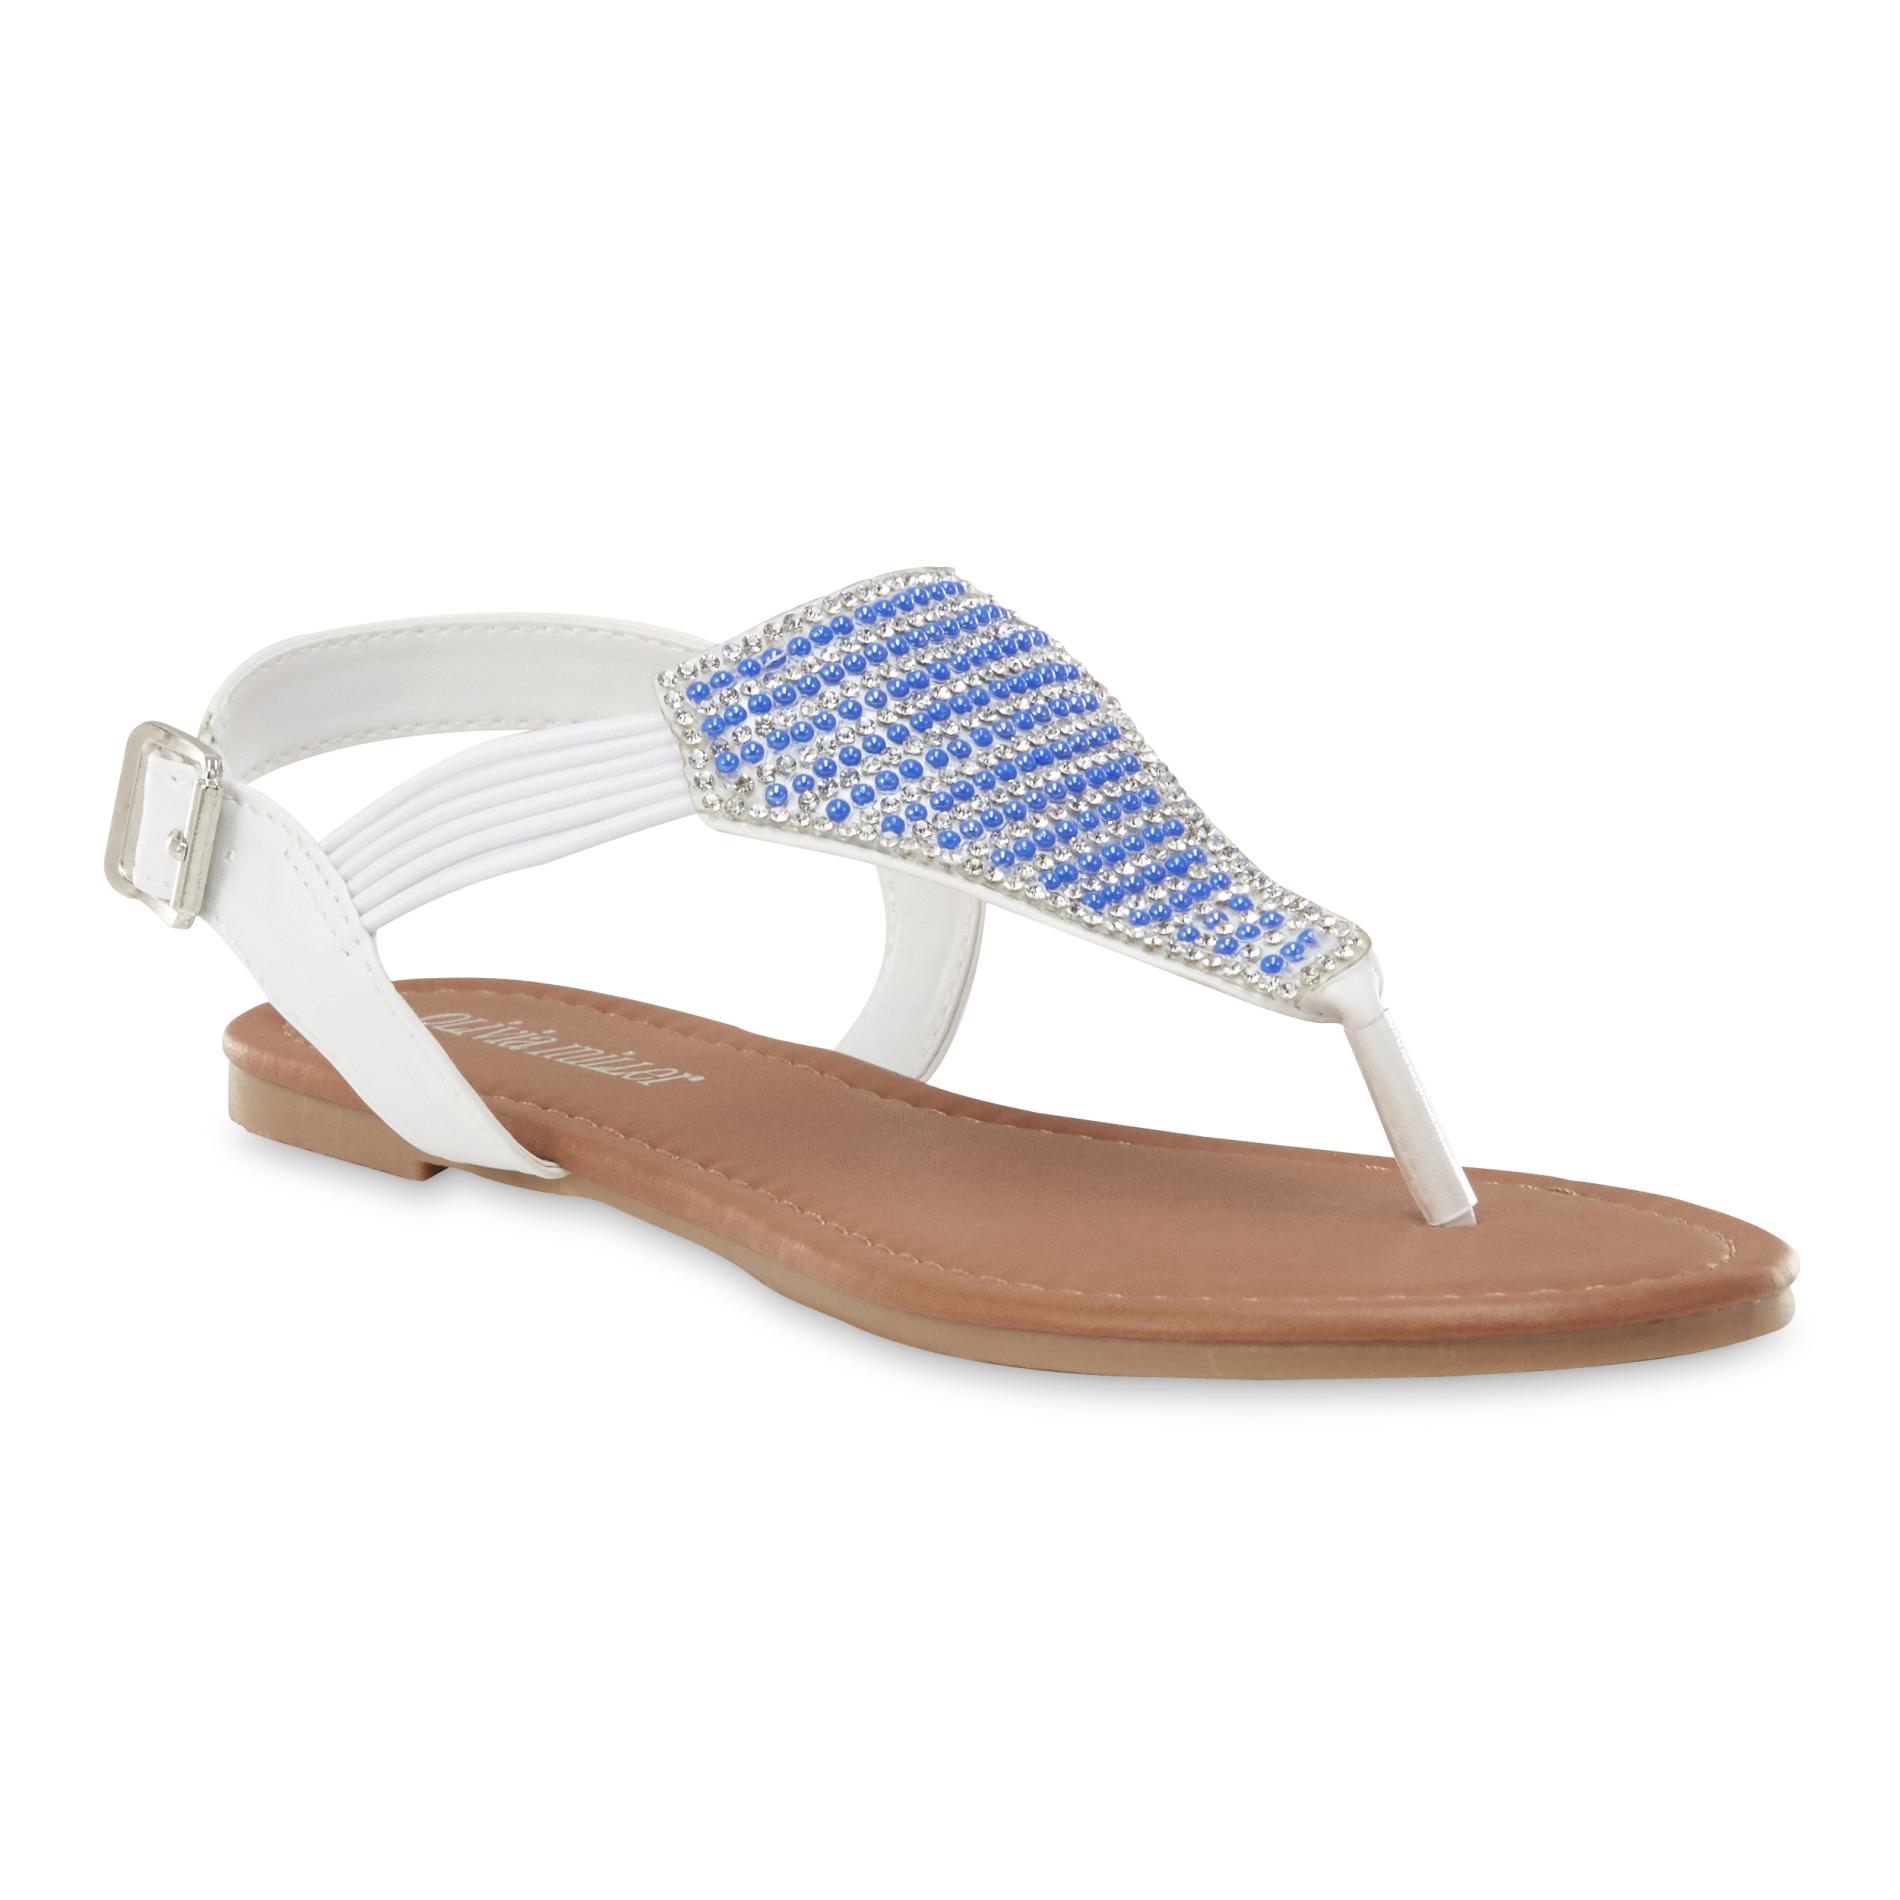 Olivia Miller Women's Avari Thong Sandal - White